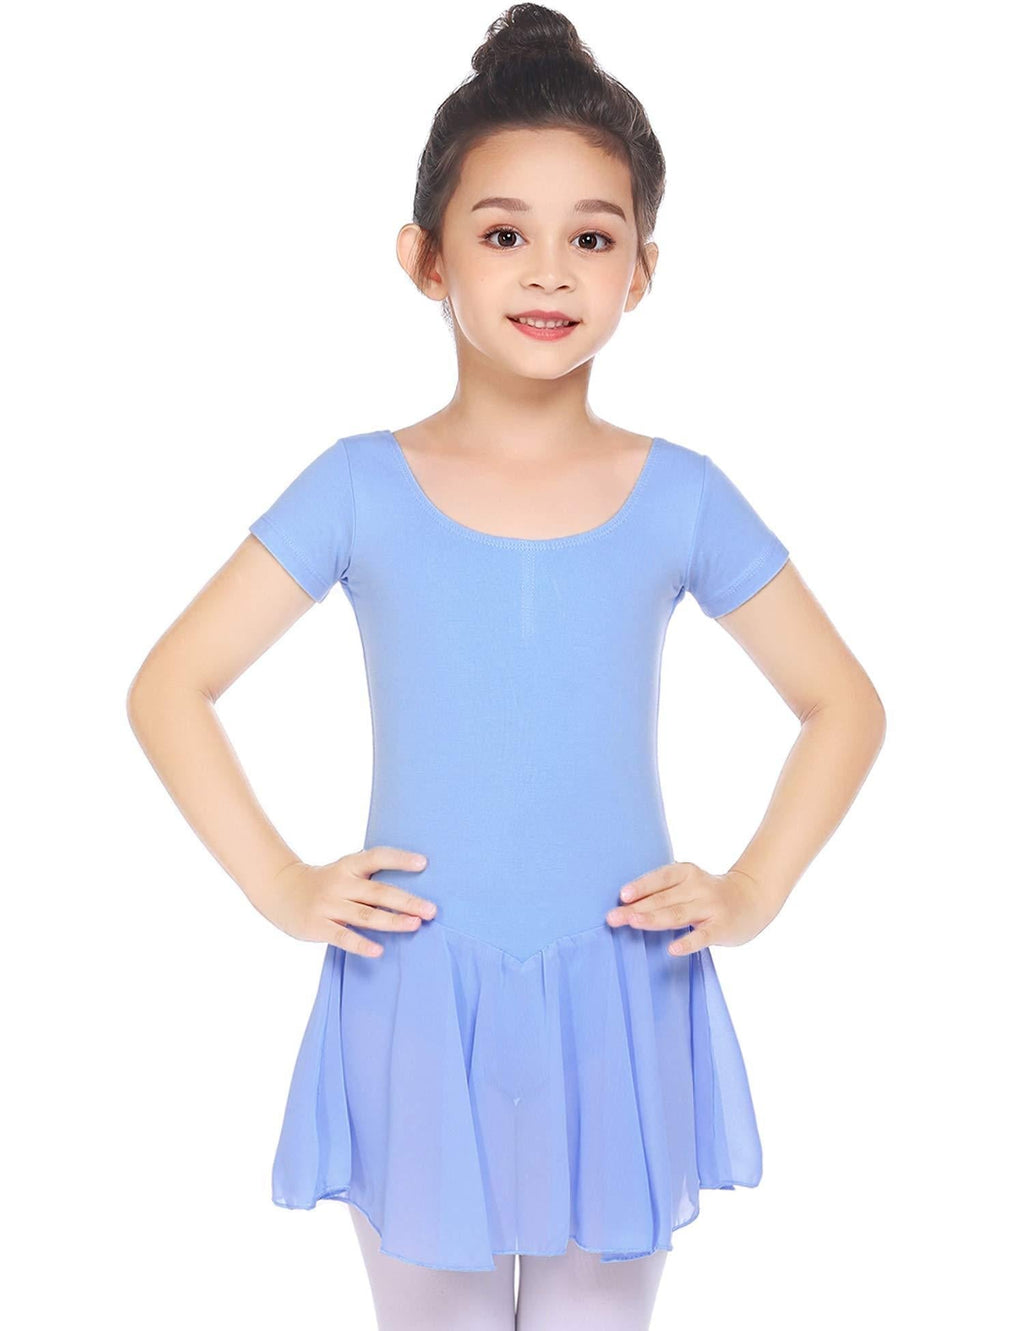 Boyoo Girl's Ballet Dance Dress Short Sleeve Classic Ballet Tutu Skirt Leotard for 3-11 Years Blue 3-4T - BeesActive Australia